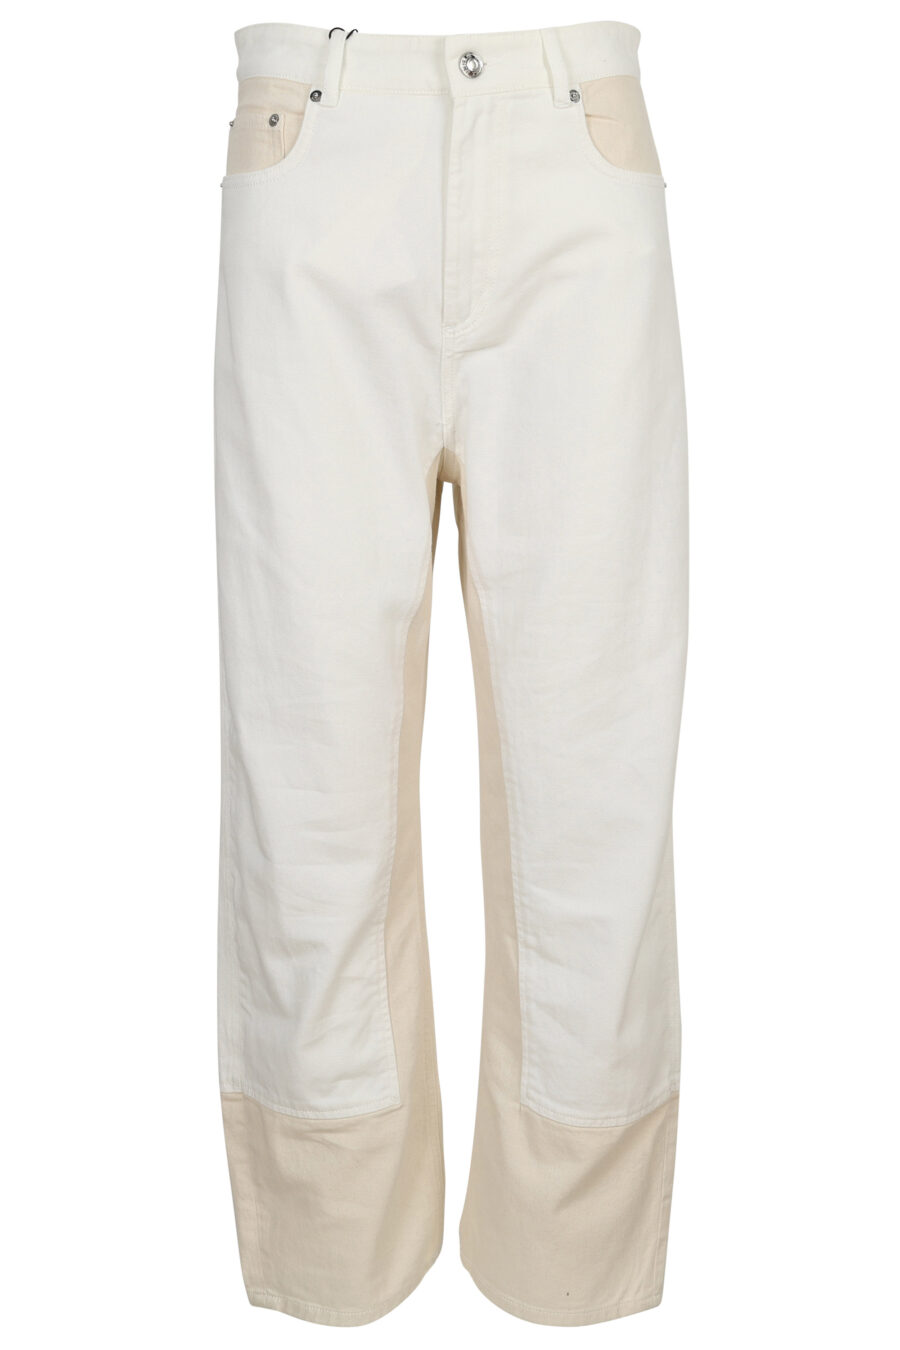 Mistura de calças combinadas brancas - 8054943650114